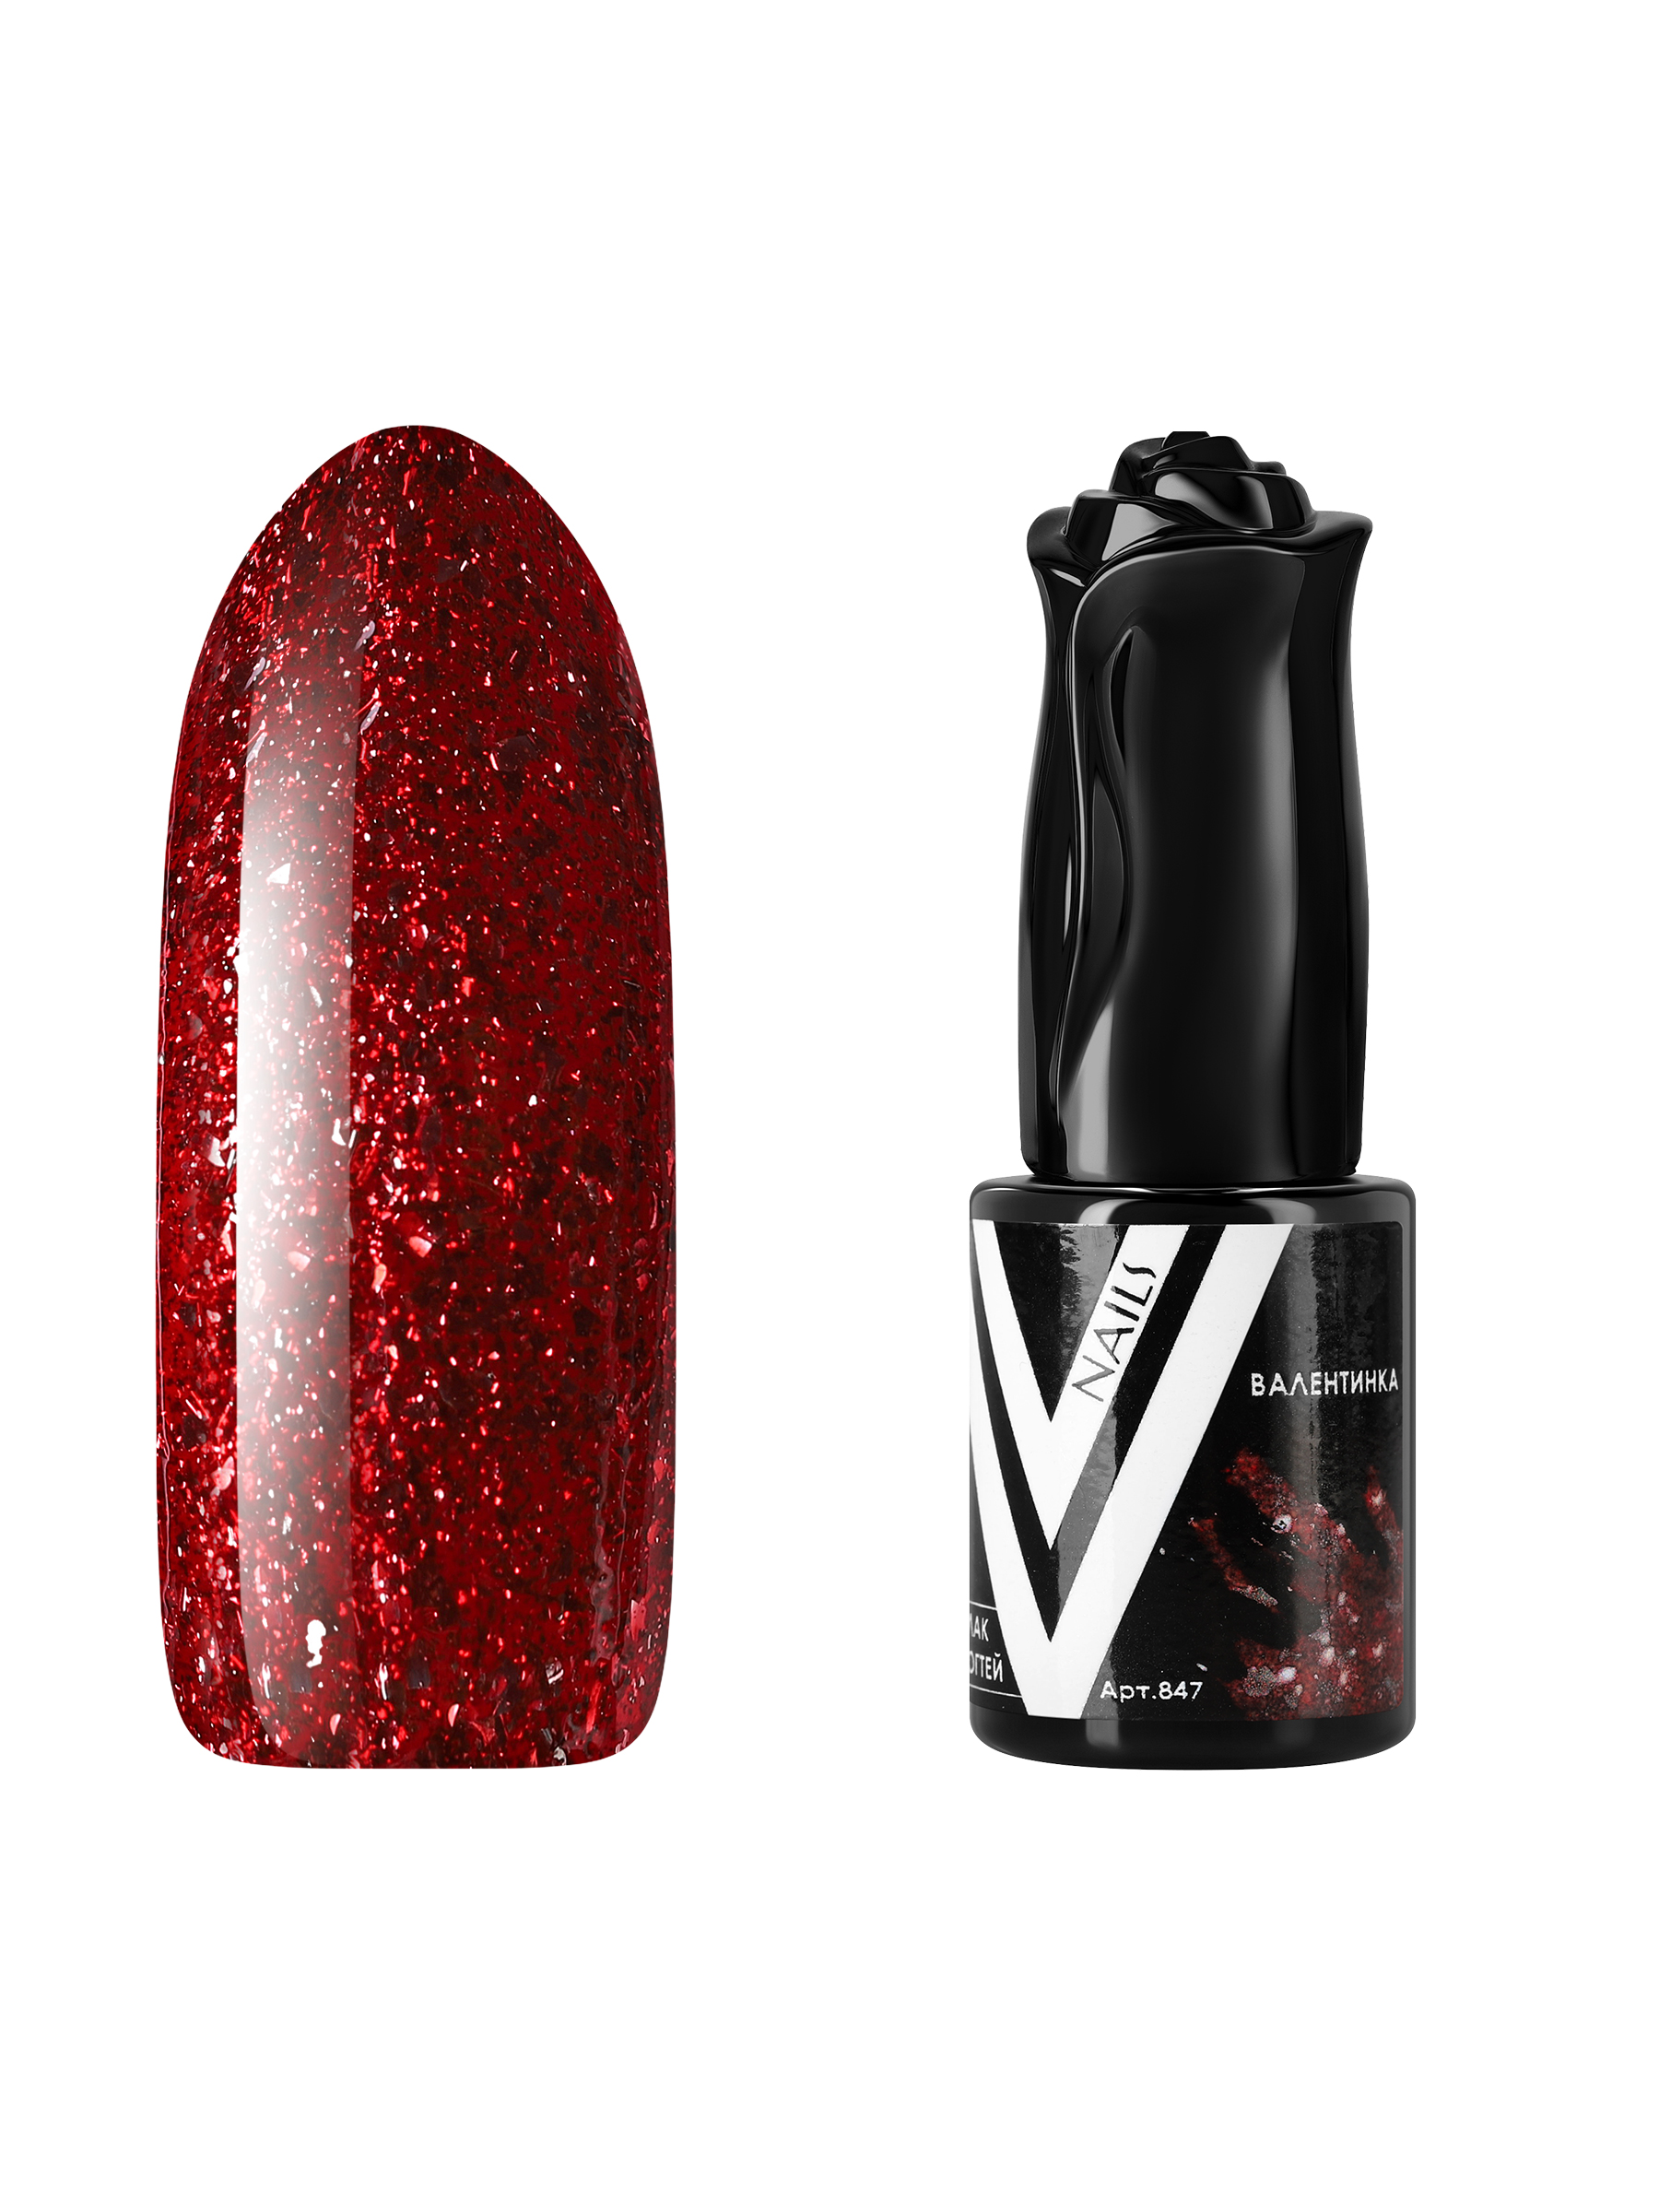 Гель-лак для ногтей с блестками Vogue Nails плотный, насыщенный, темный, красный, 10 мл гель лак с перламутром vogue nails кошачий глаз магнитный плотный темный фиолетовый 10 мл